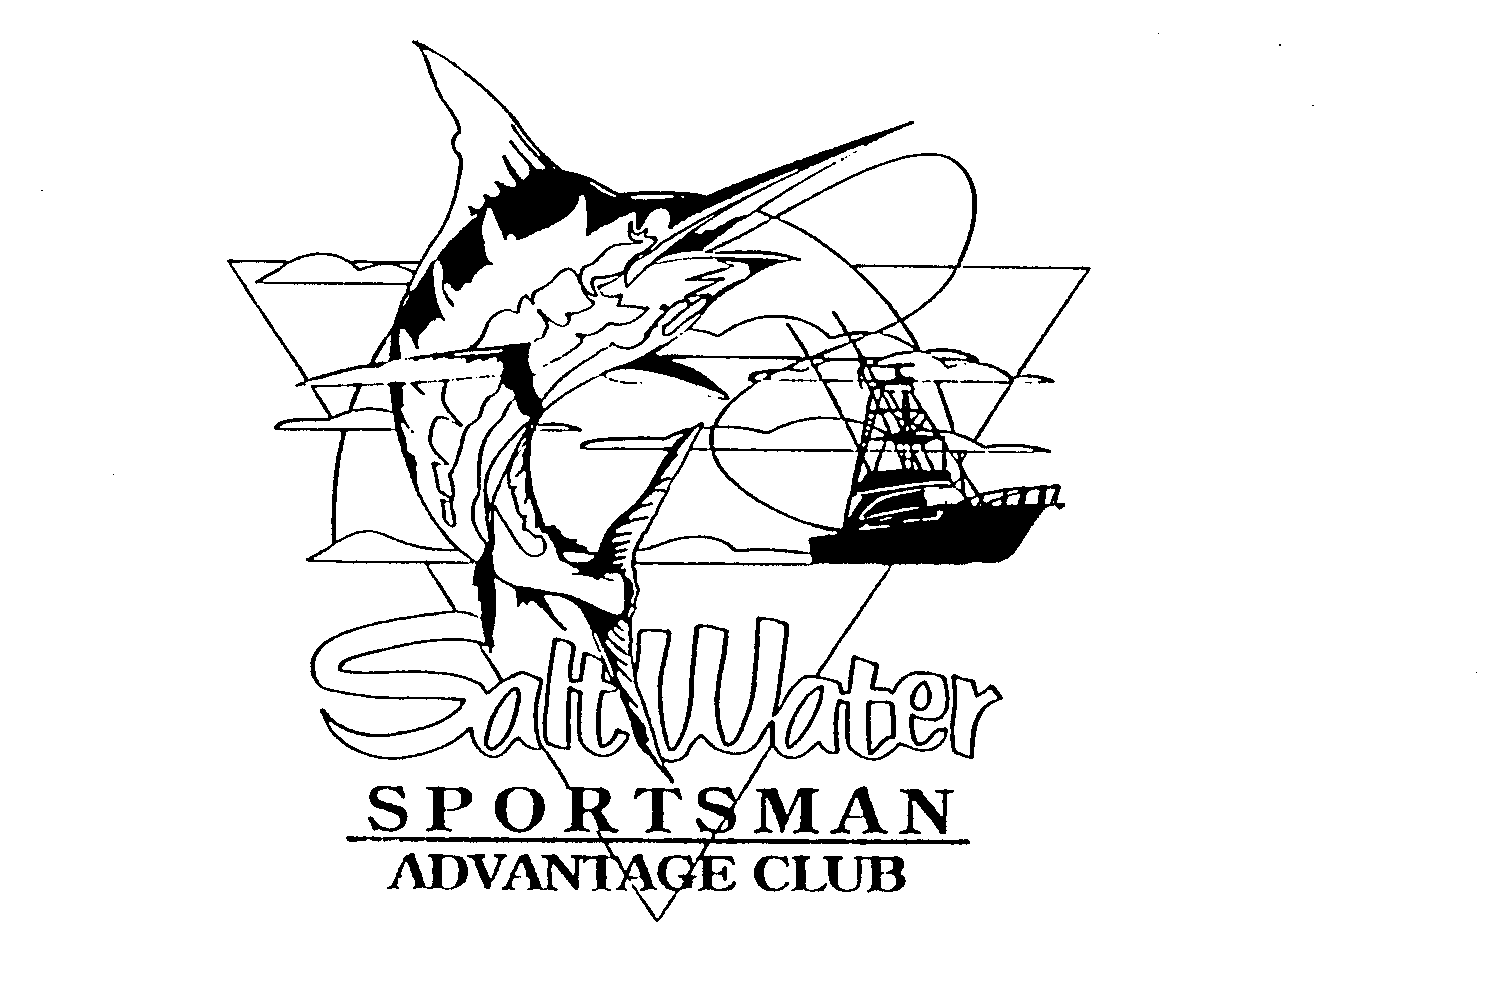  SALT WATER SPORTSMAN ADVANTAGE CLUB